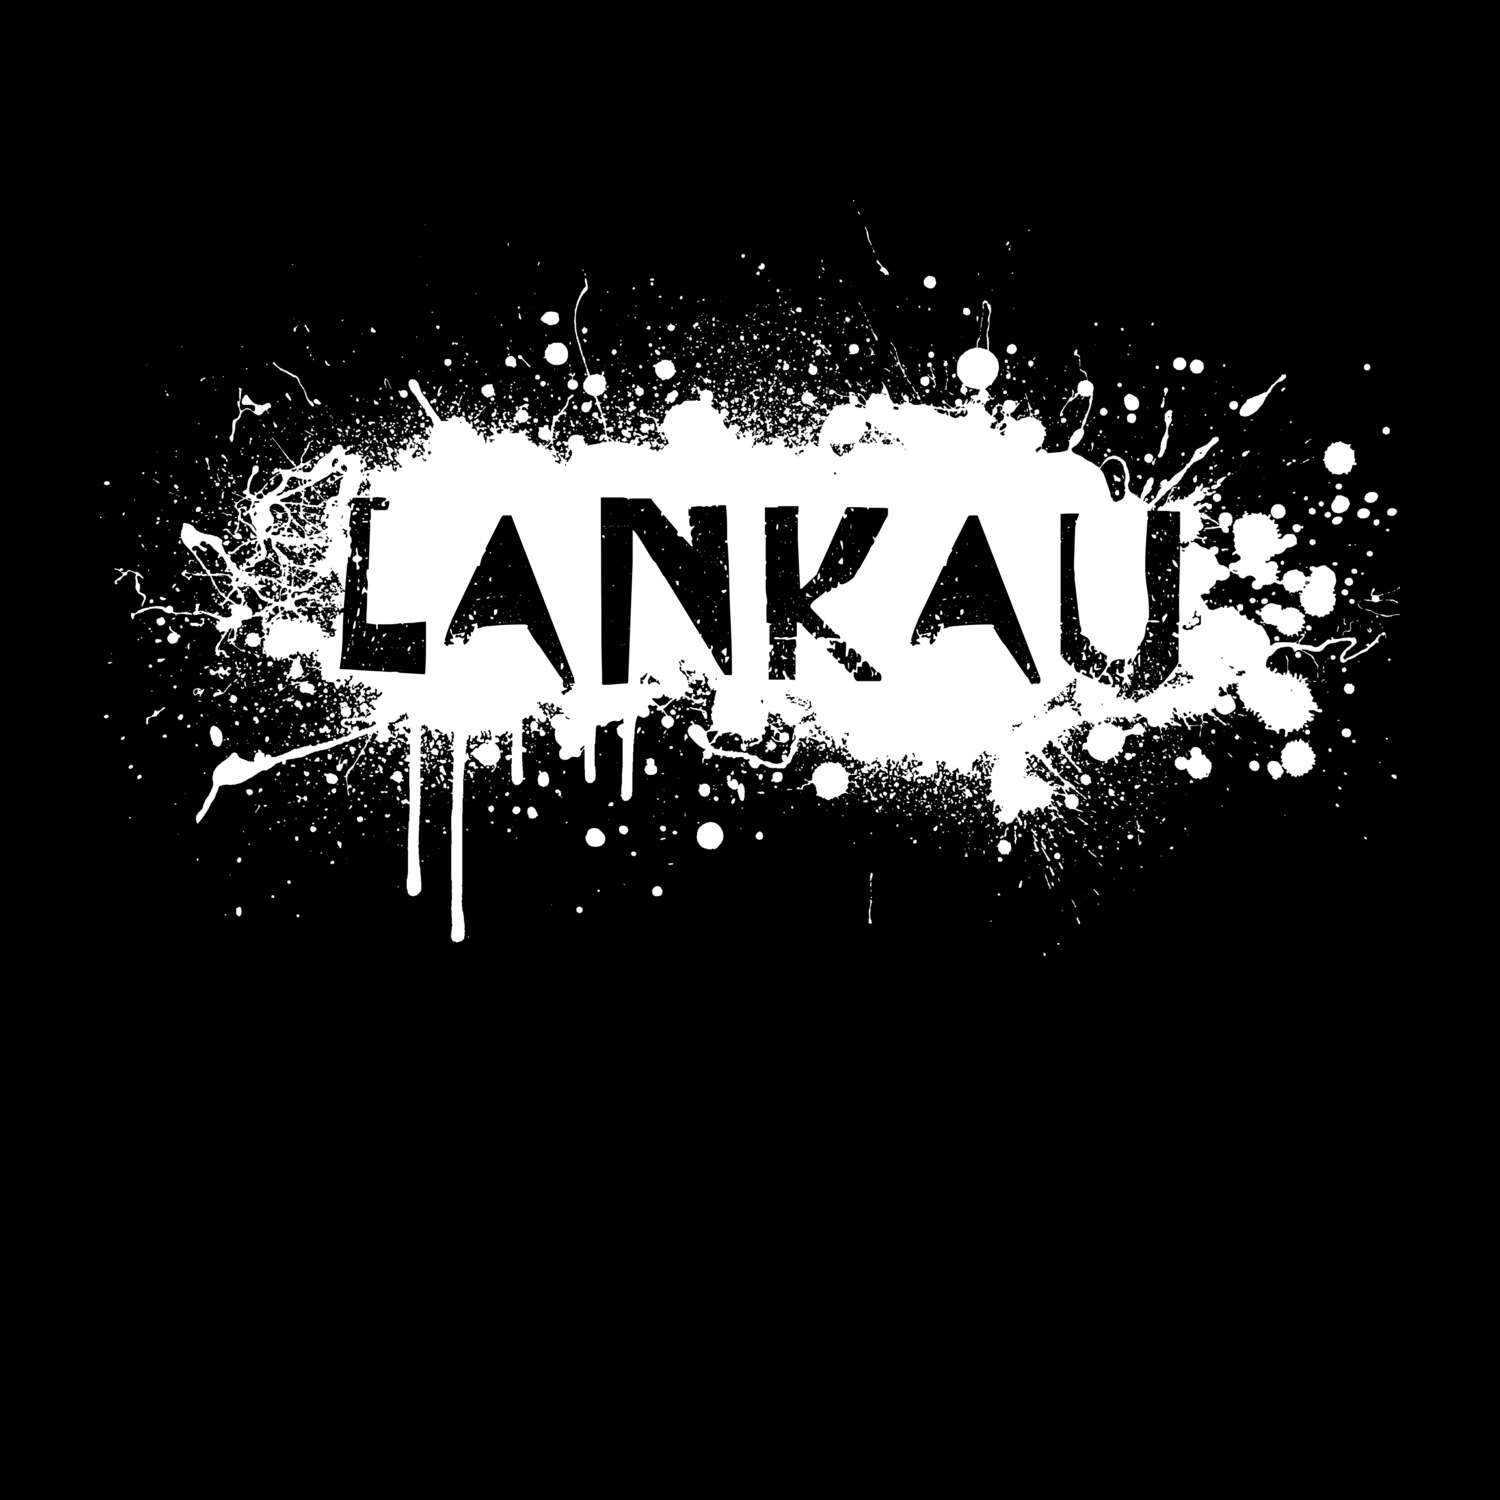 Lankau T-Shirt »Paint Splash Punk«